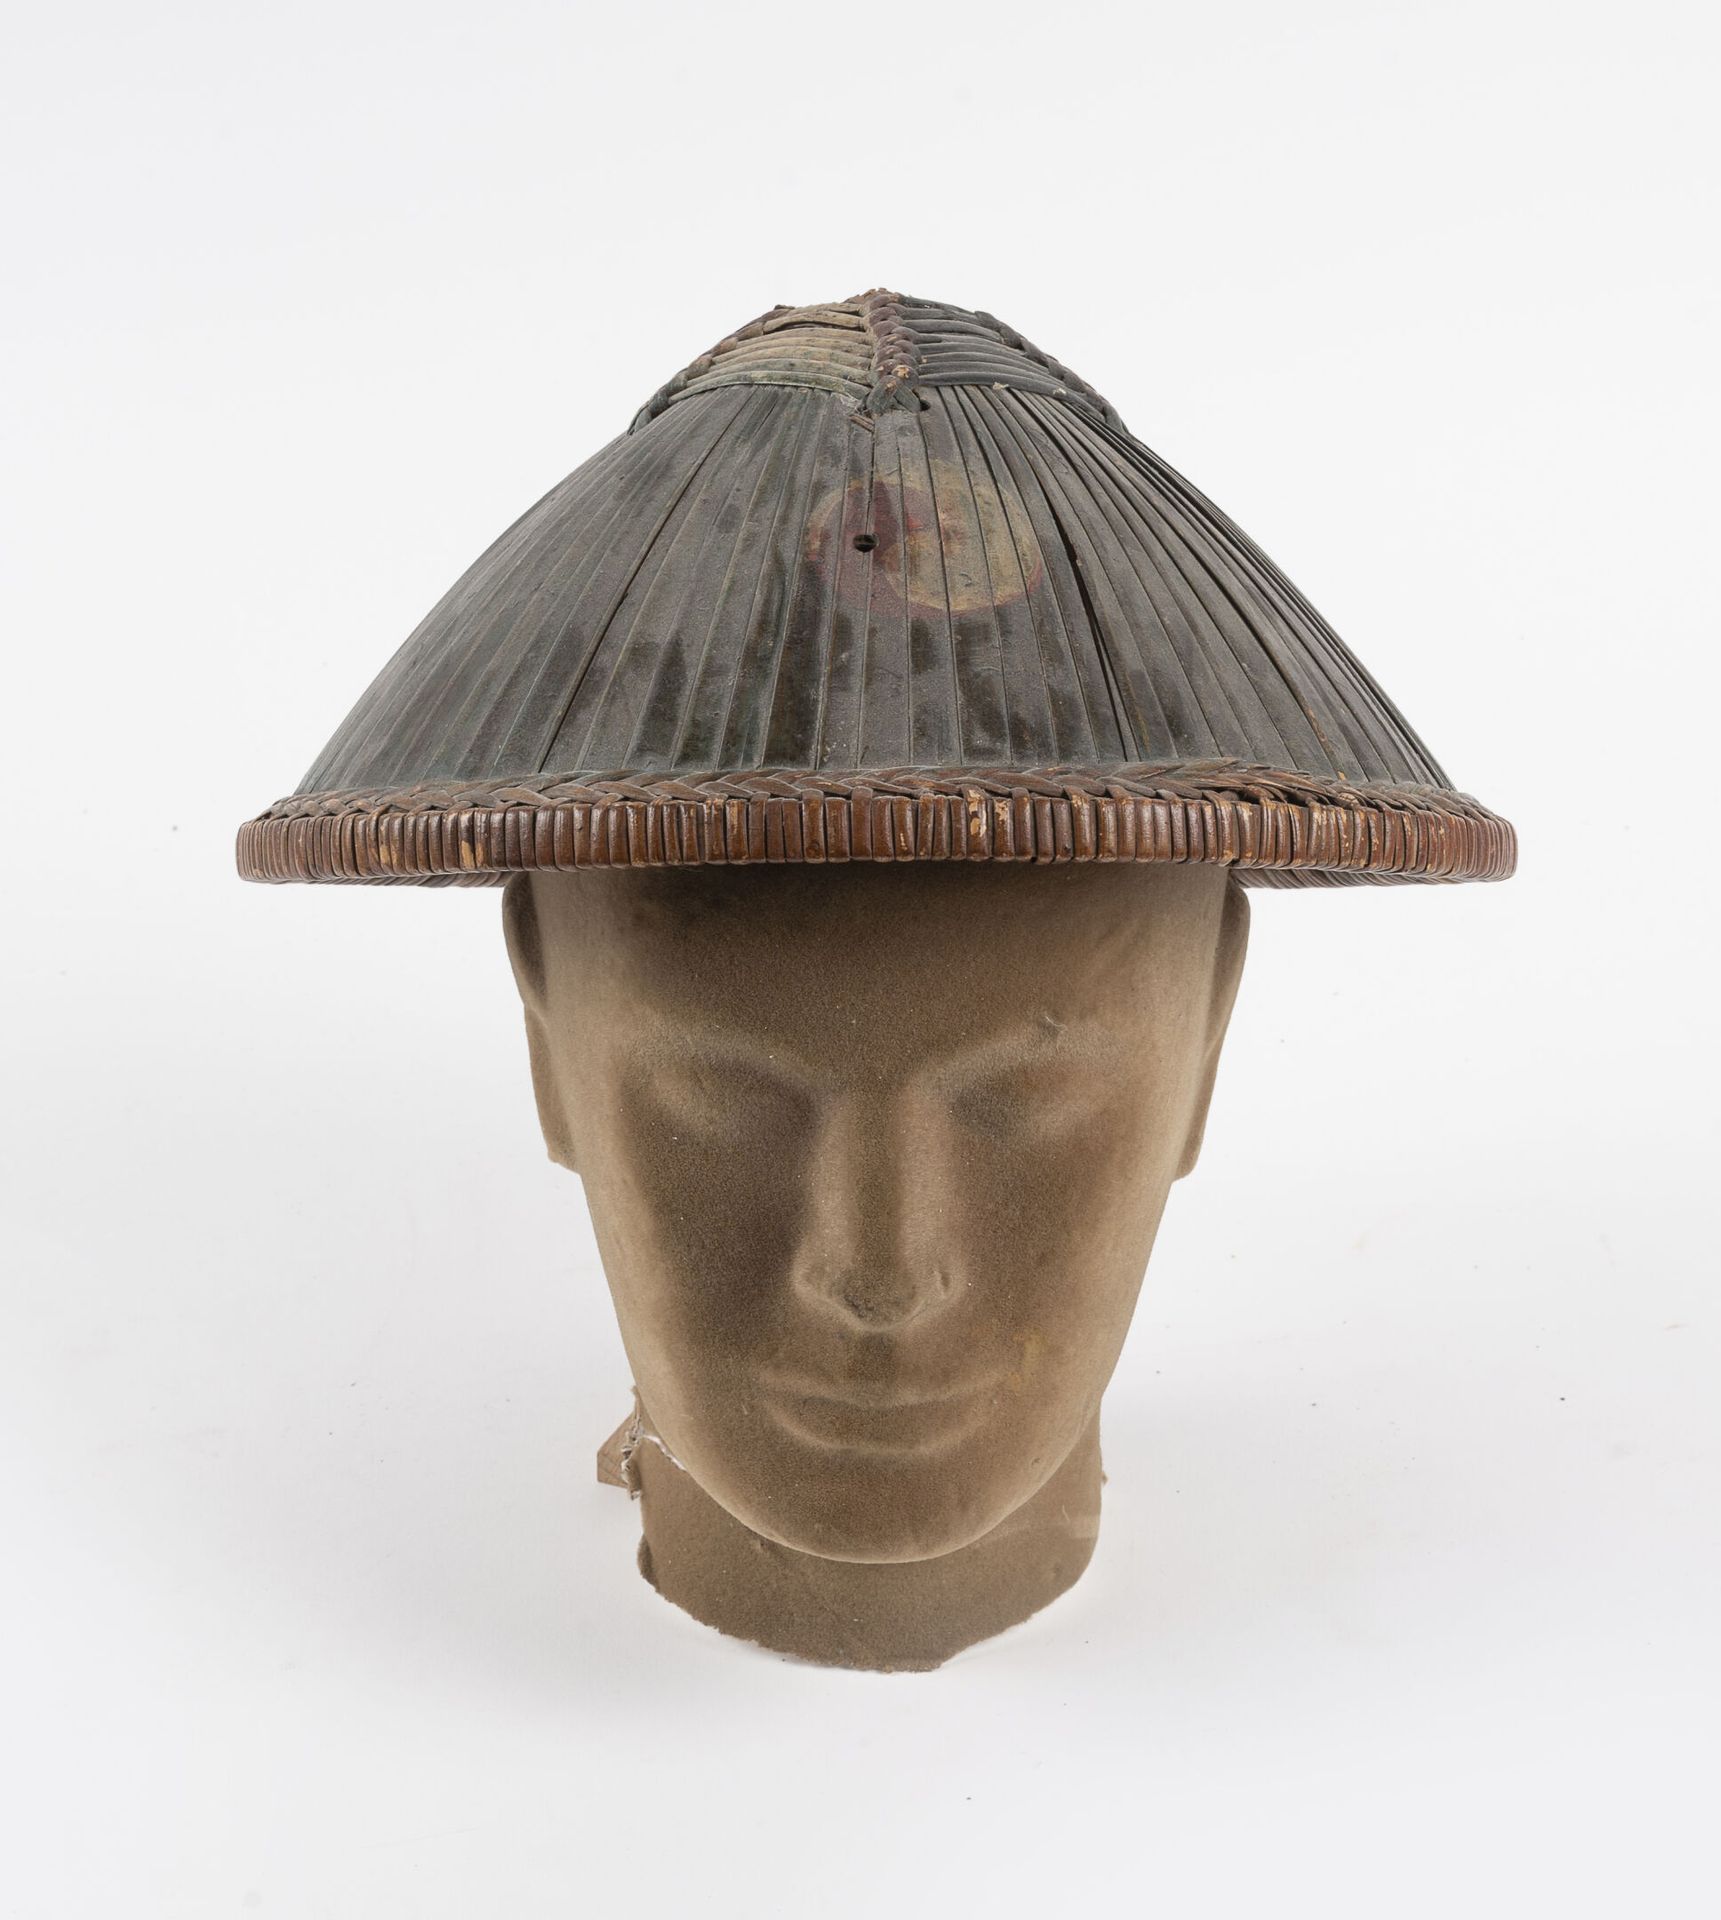 Null Koreanischer Helm aus Bambuslatten, bemalt mit dem Ying-und-Yang-Zeichen.

&hellip;